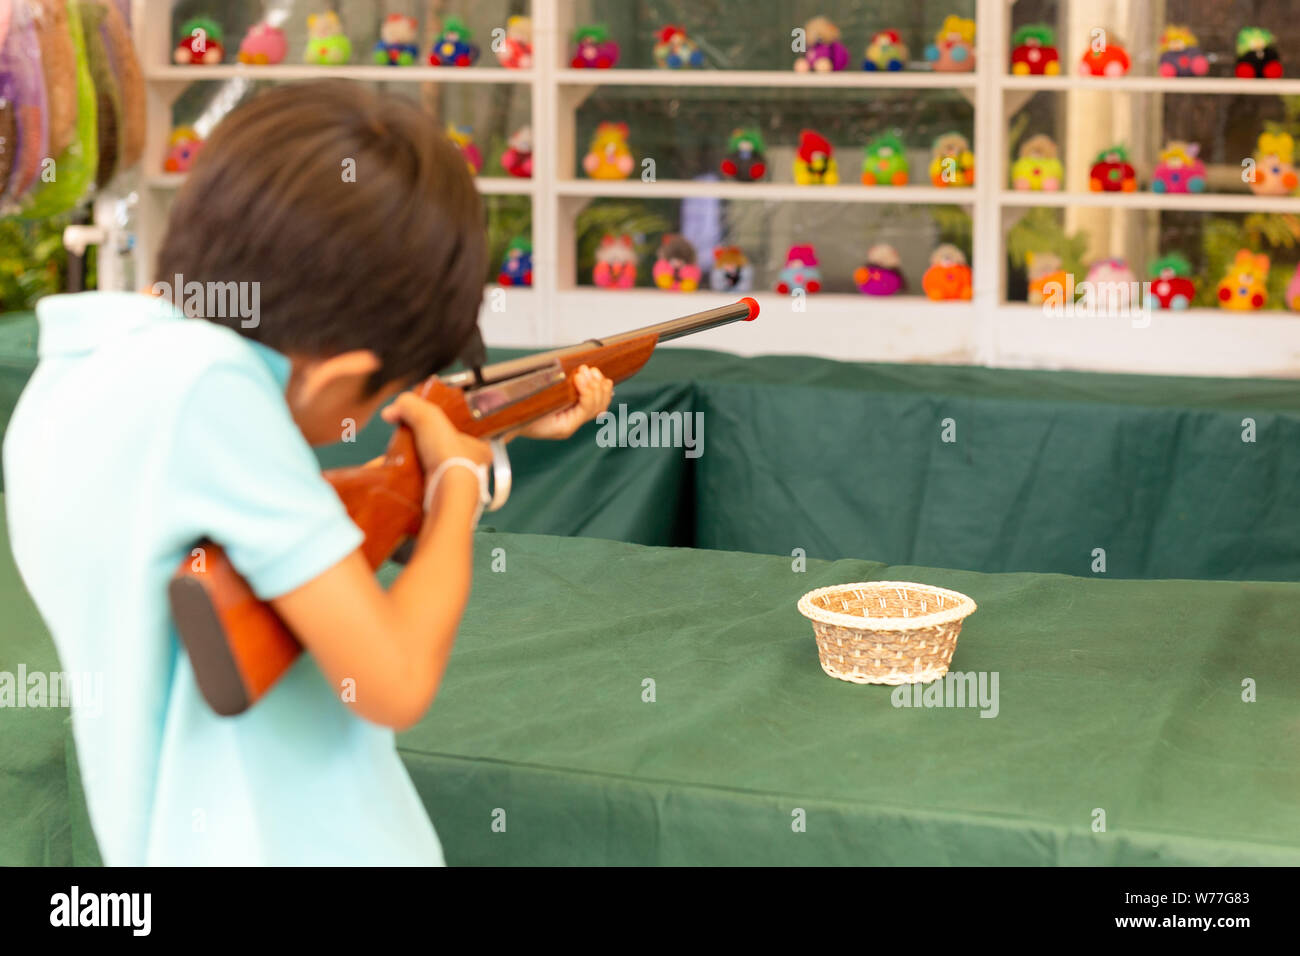 Boy shooting cork gun game at fair. Stock Photo